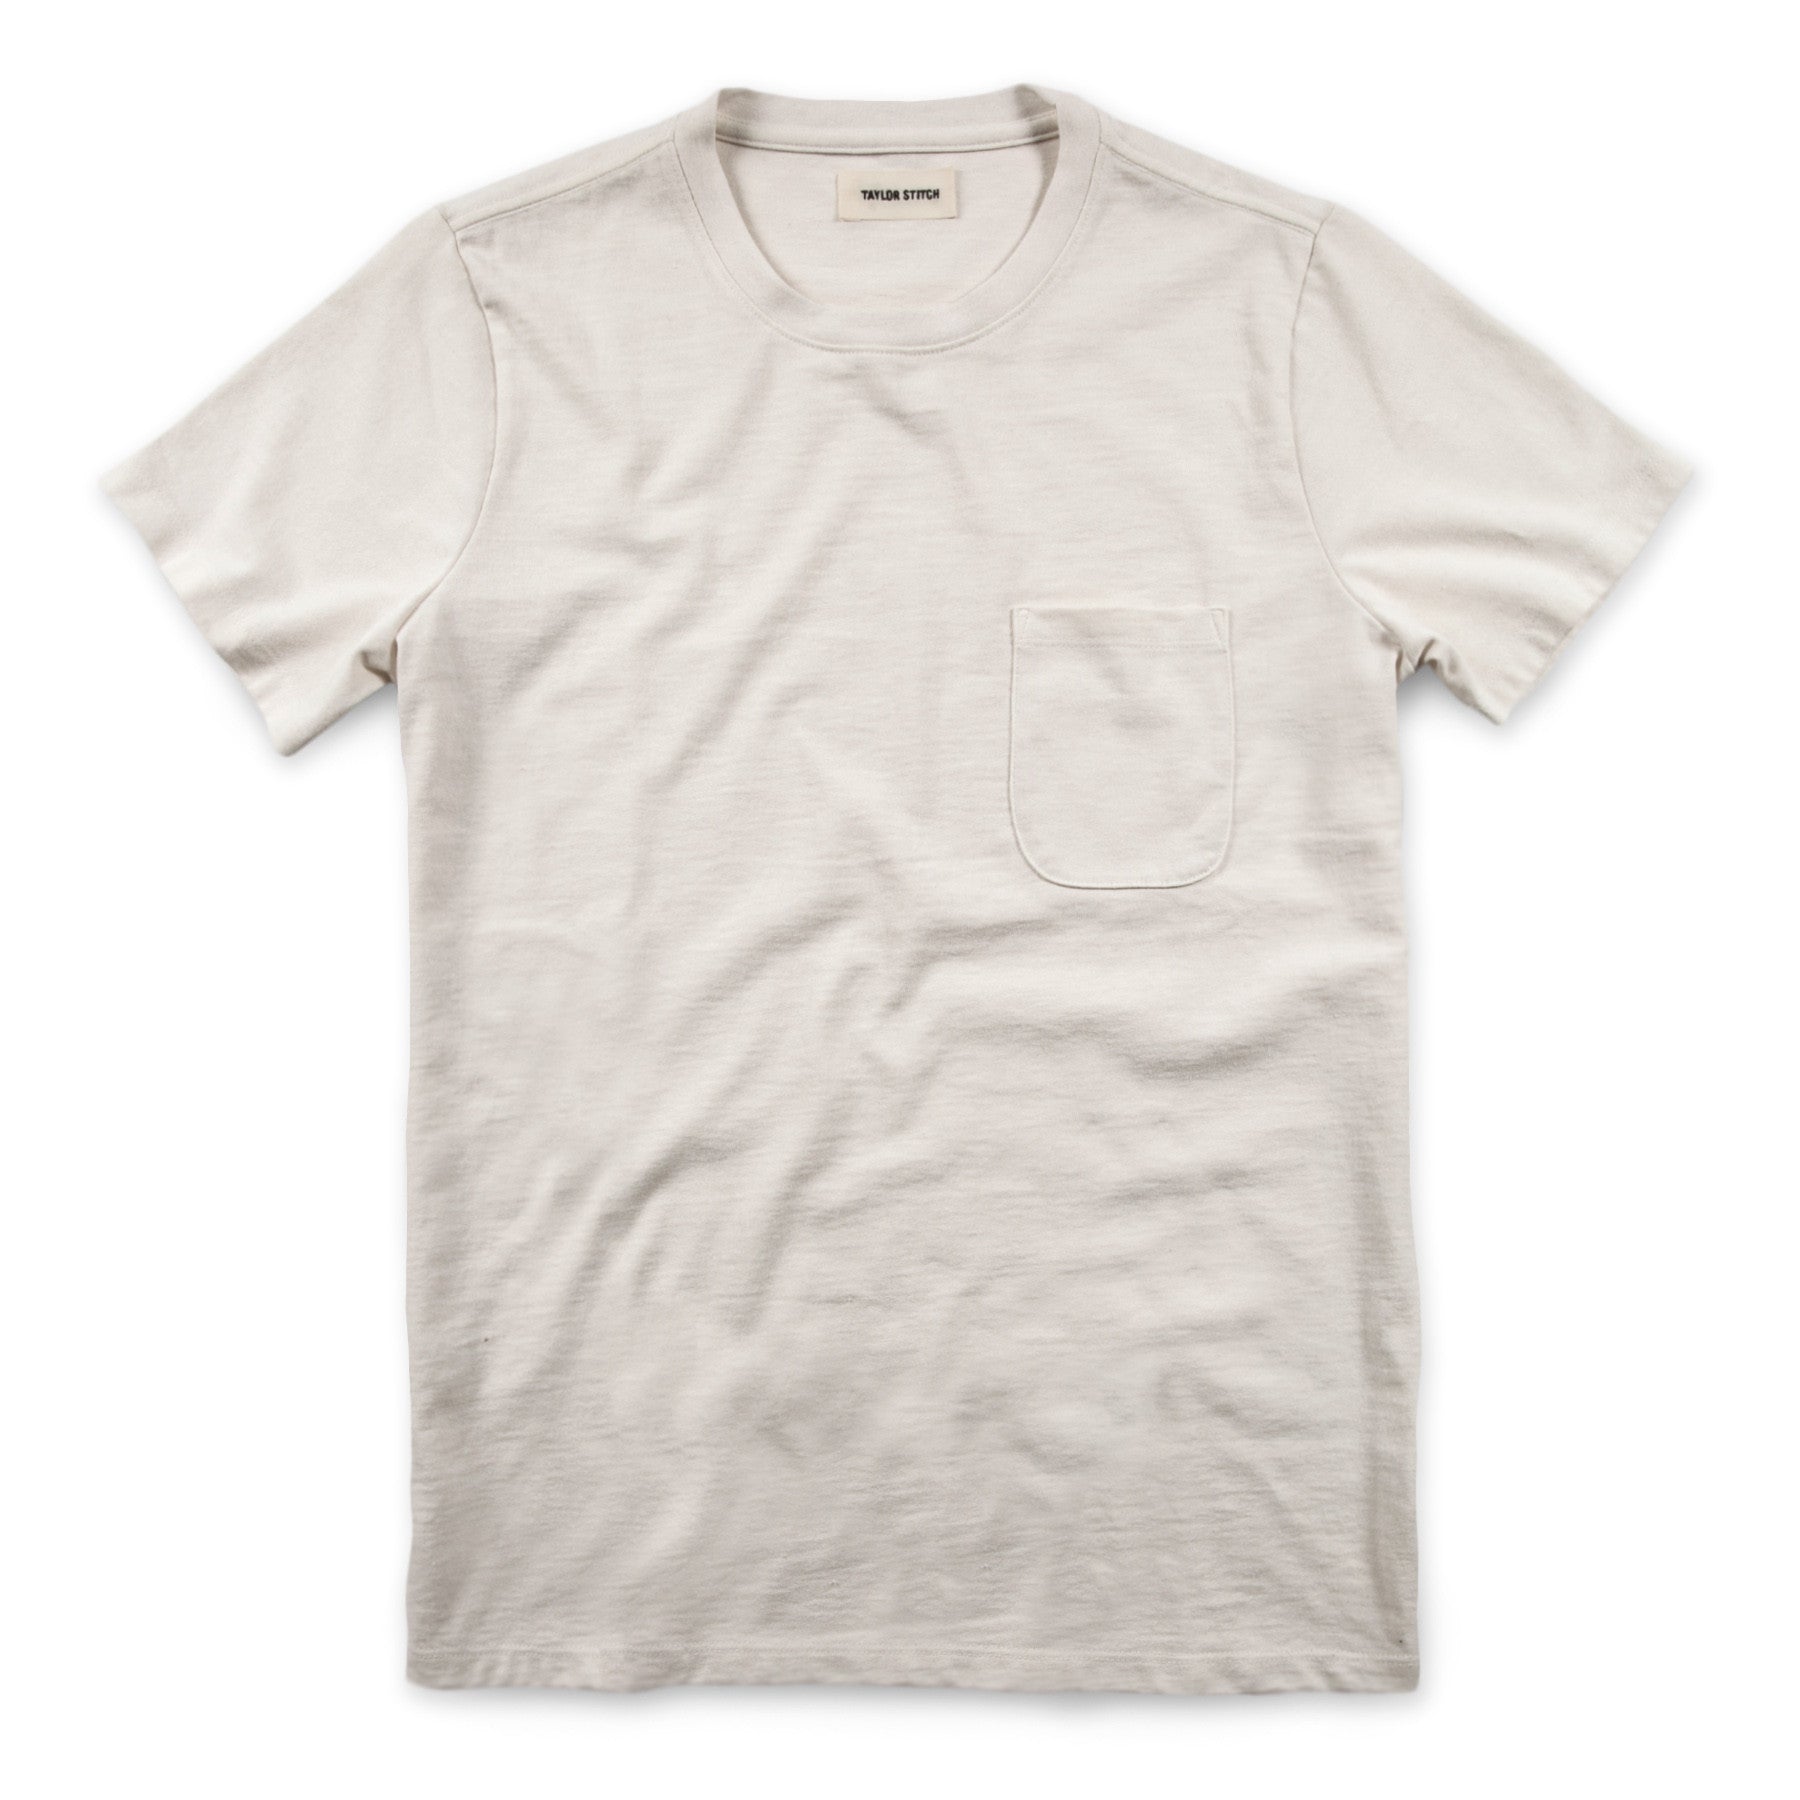 Stitches Men's T-Shirt - Navy - XL